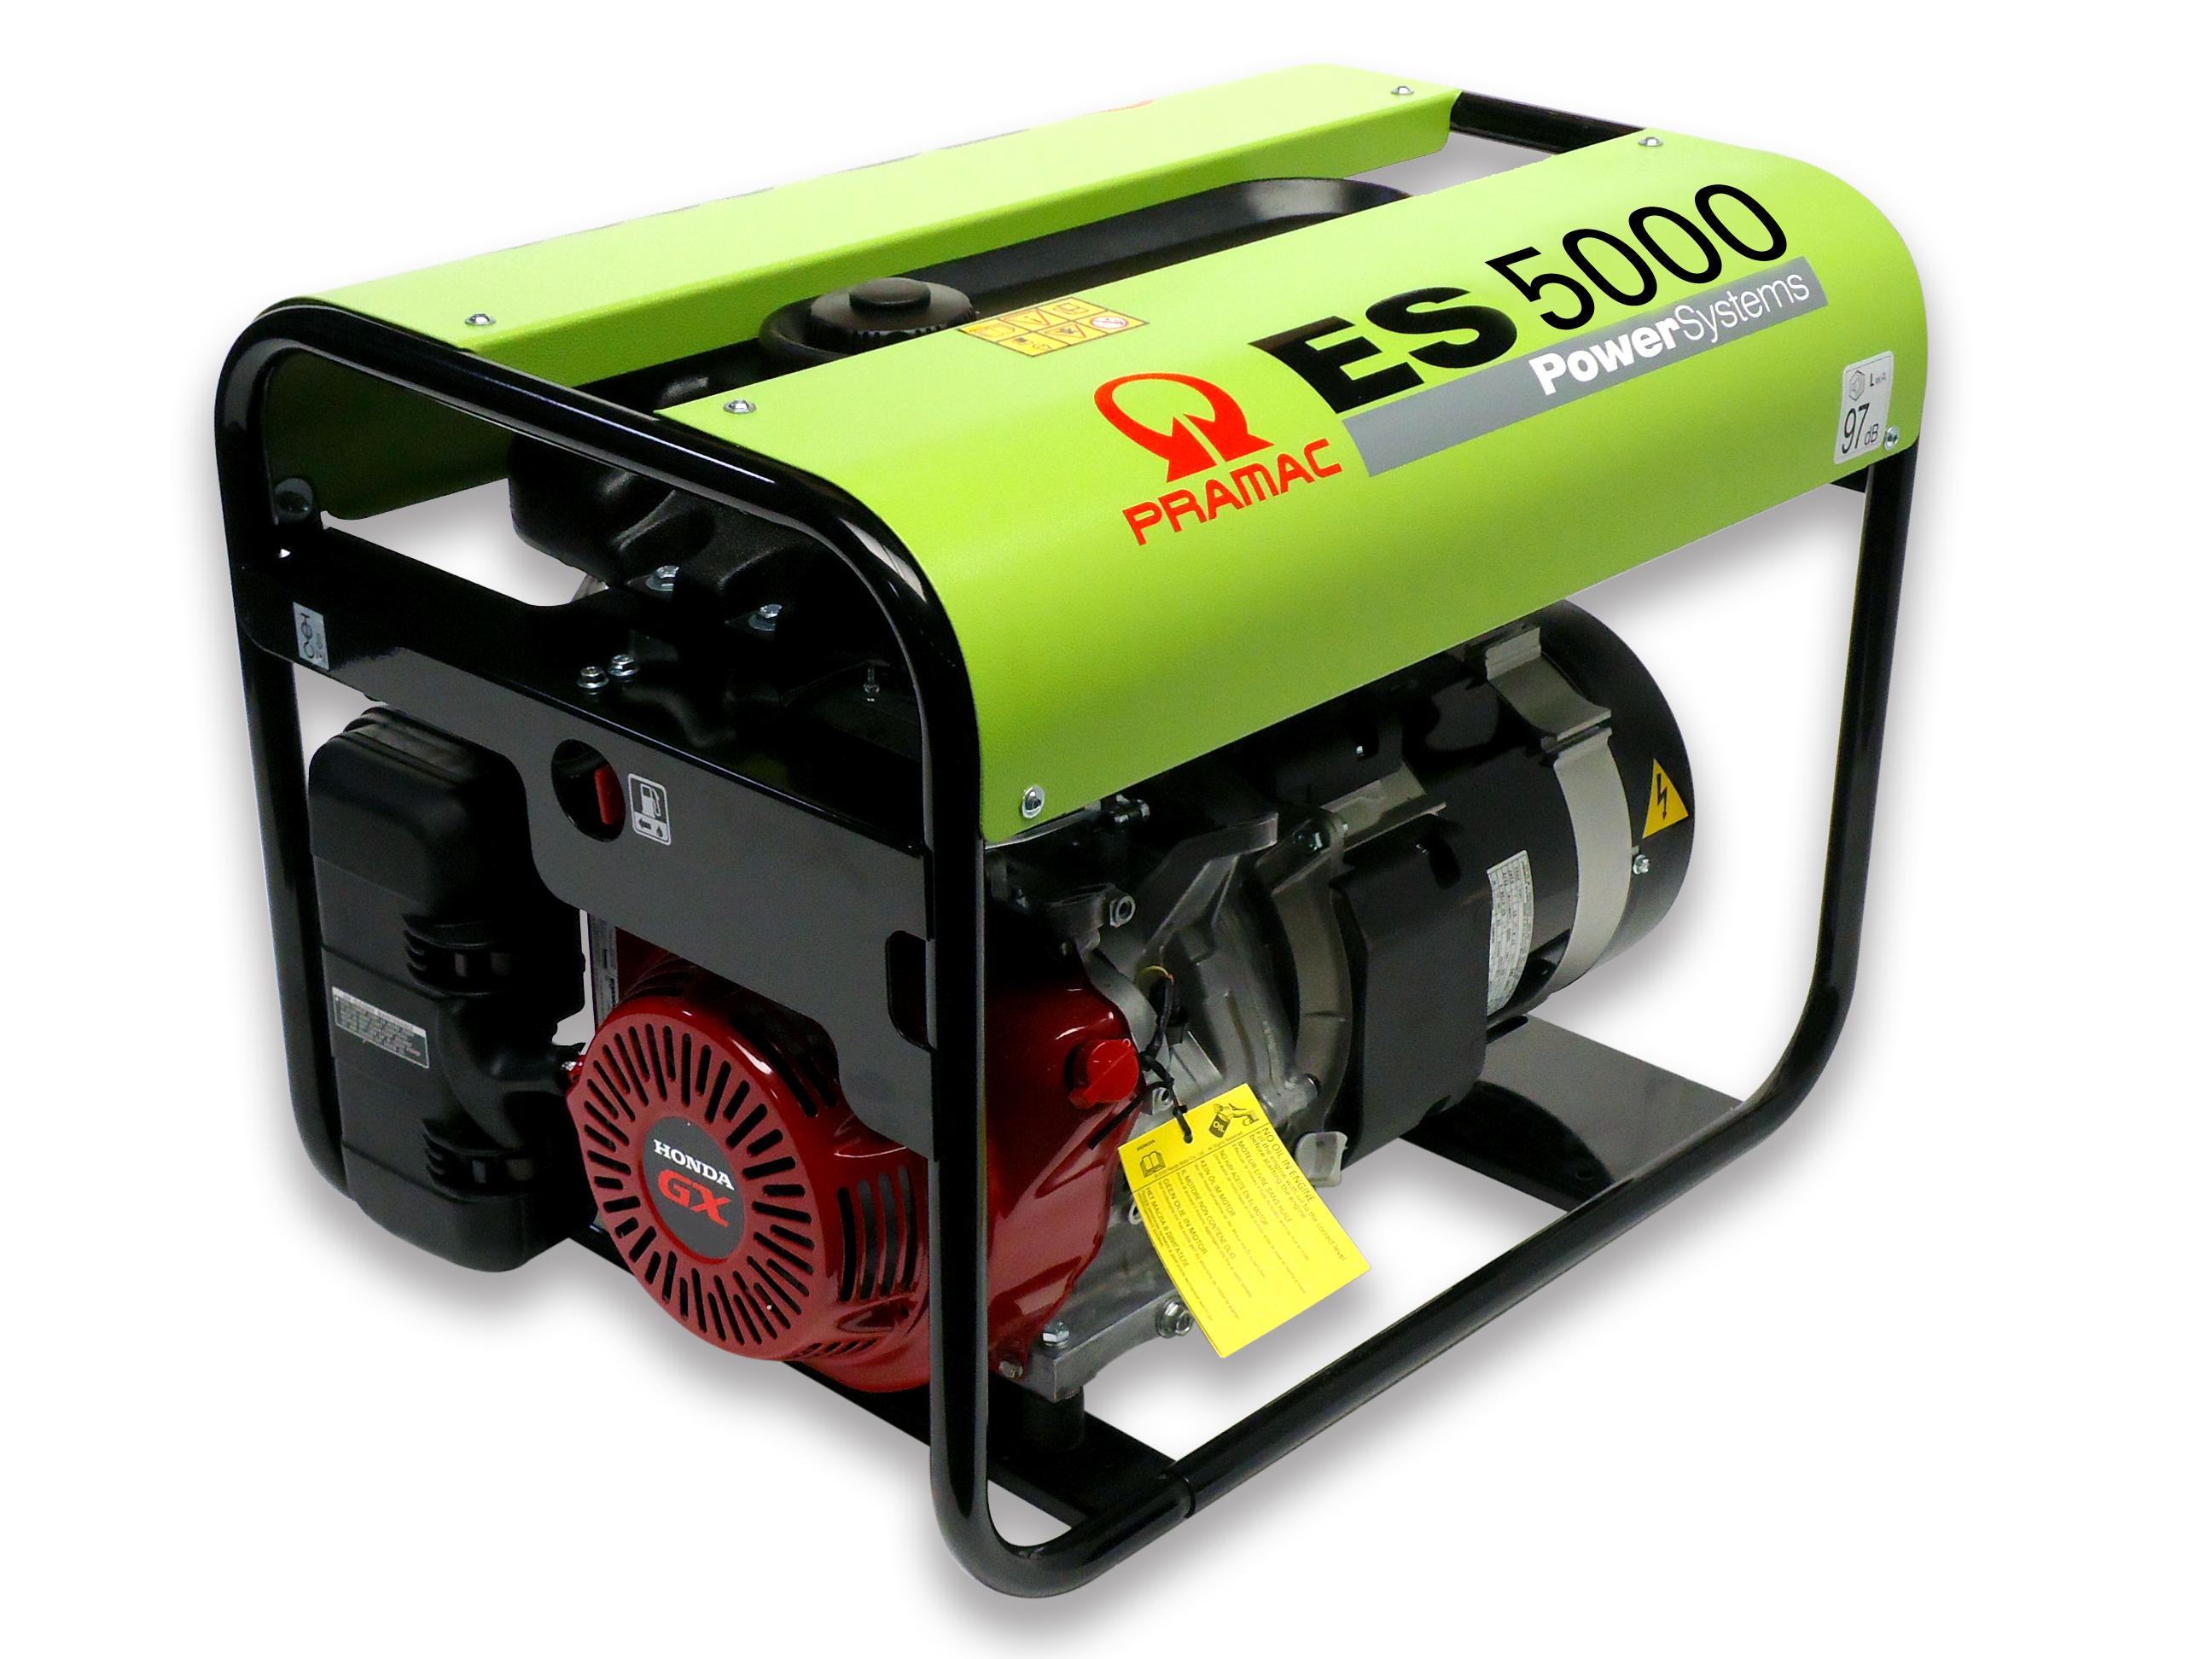 Generator ES5000SHHPI 230v, 11 L. tank